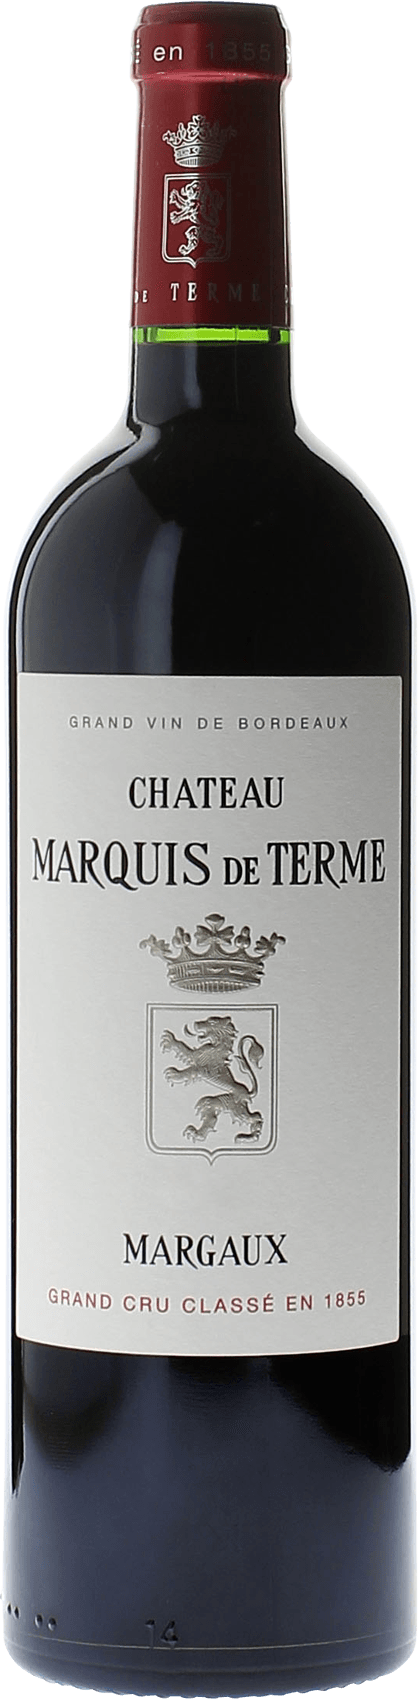 Marquis de terme 2017 4me Grand cru class Margaux, Bordeaux rouge